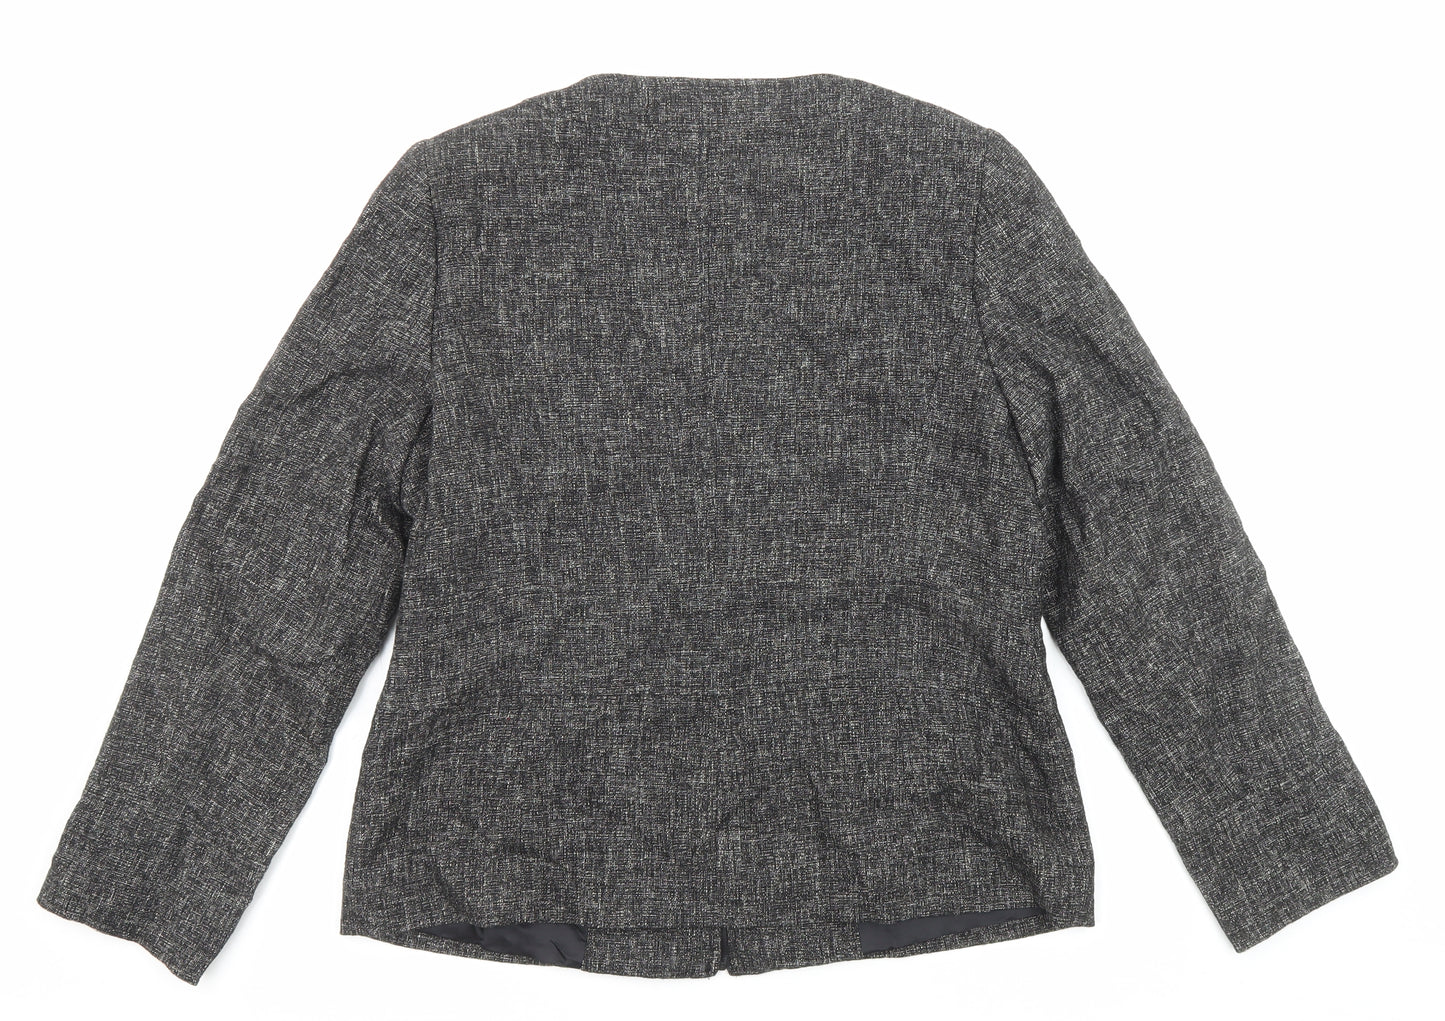 Windsmoor Womens Grey Jacket Size 12 Zip